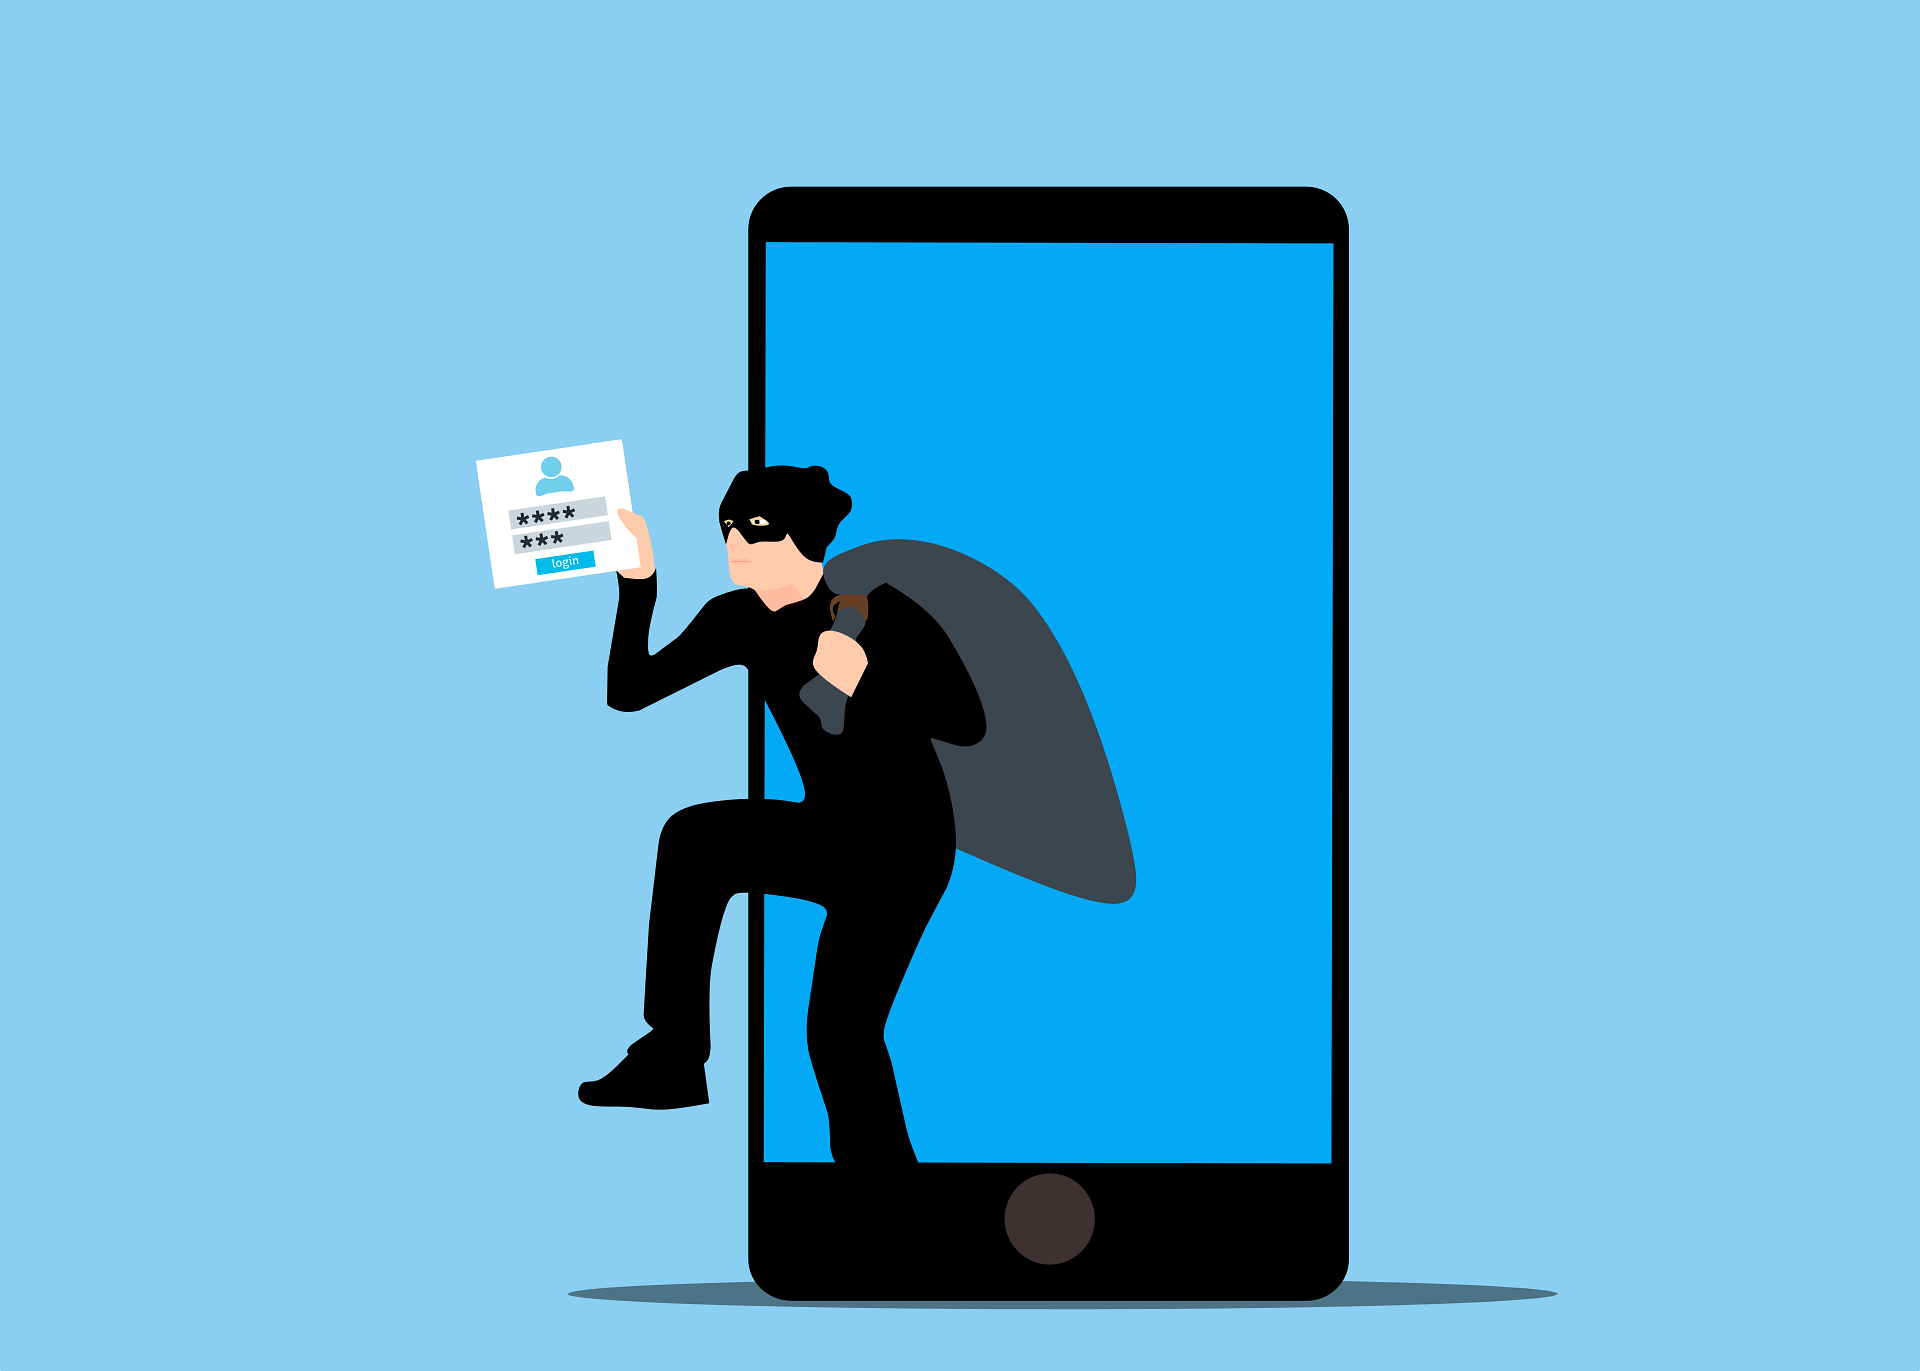 Ein maskierter Dieb klettert aus einem Smartphone-Bildschirm und trägt einen Loginscreen in der Hand sowie einen offenbar gefüllten Sack hinter dem Rücken